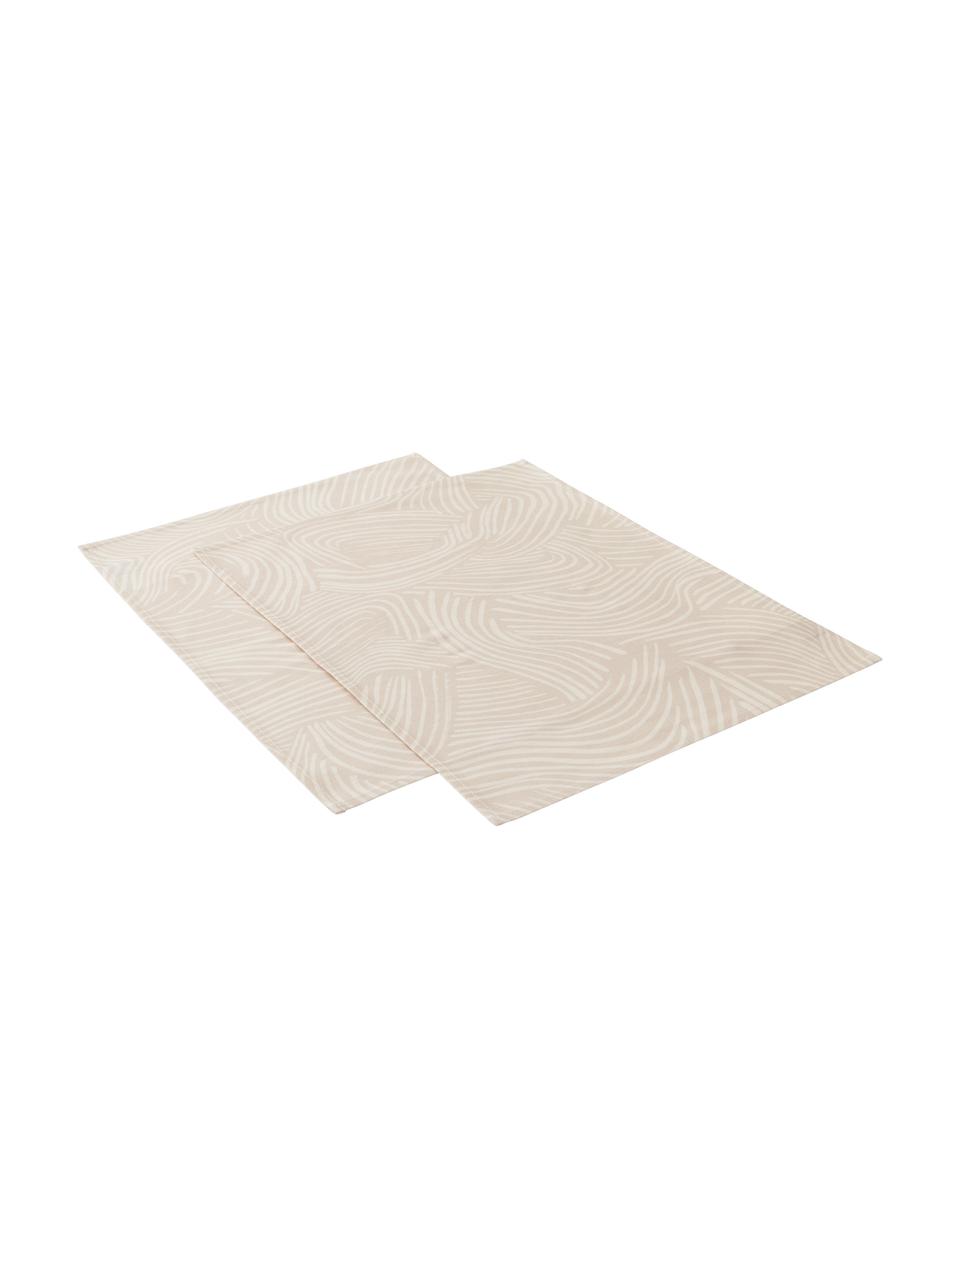 Baumwoll-Tischsets Vida in Beige mit feinen Linien, 2 Stück, 100% Baumwolle, Beige, 35 x 45 cm